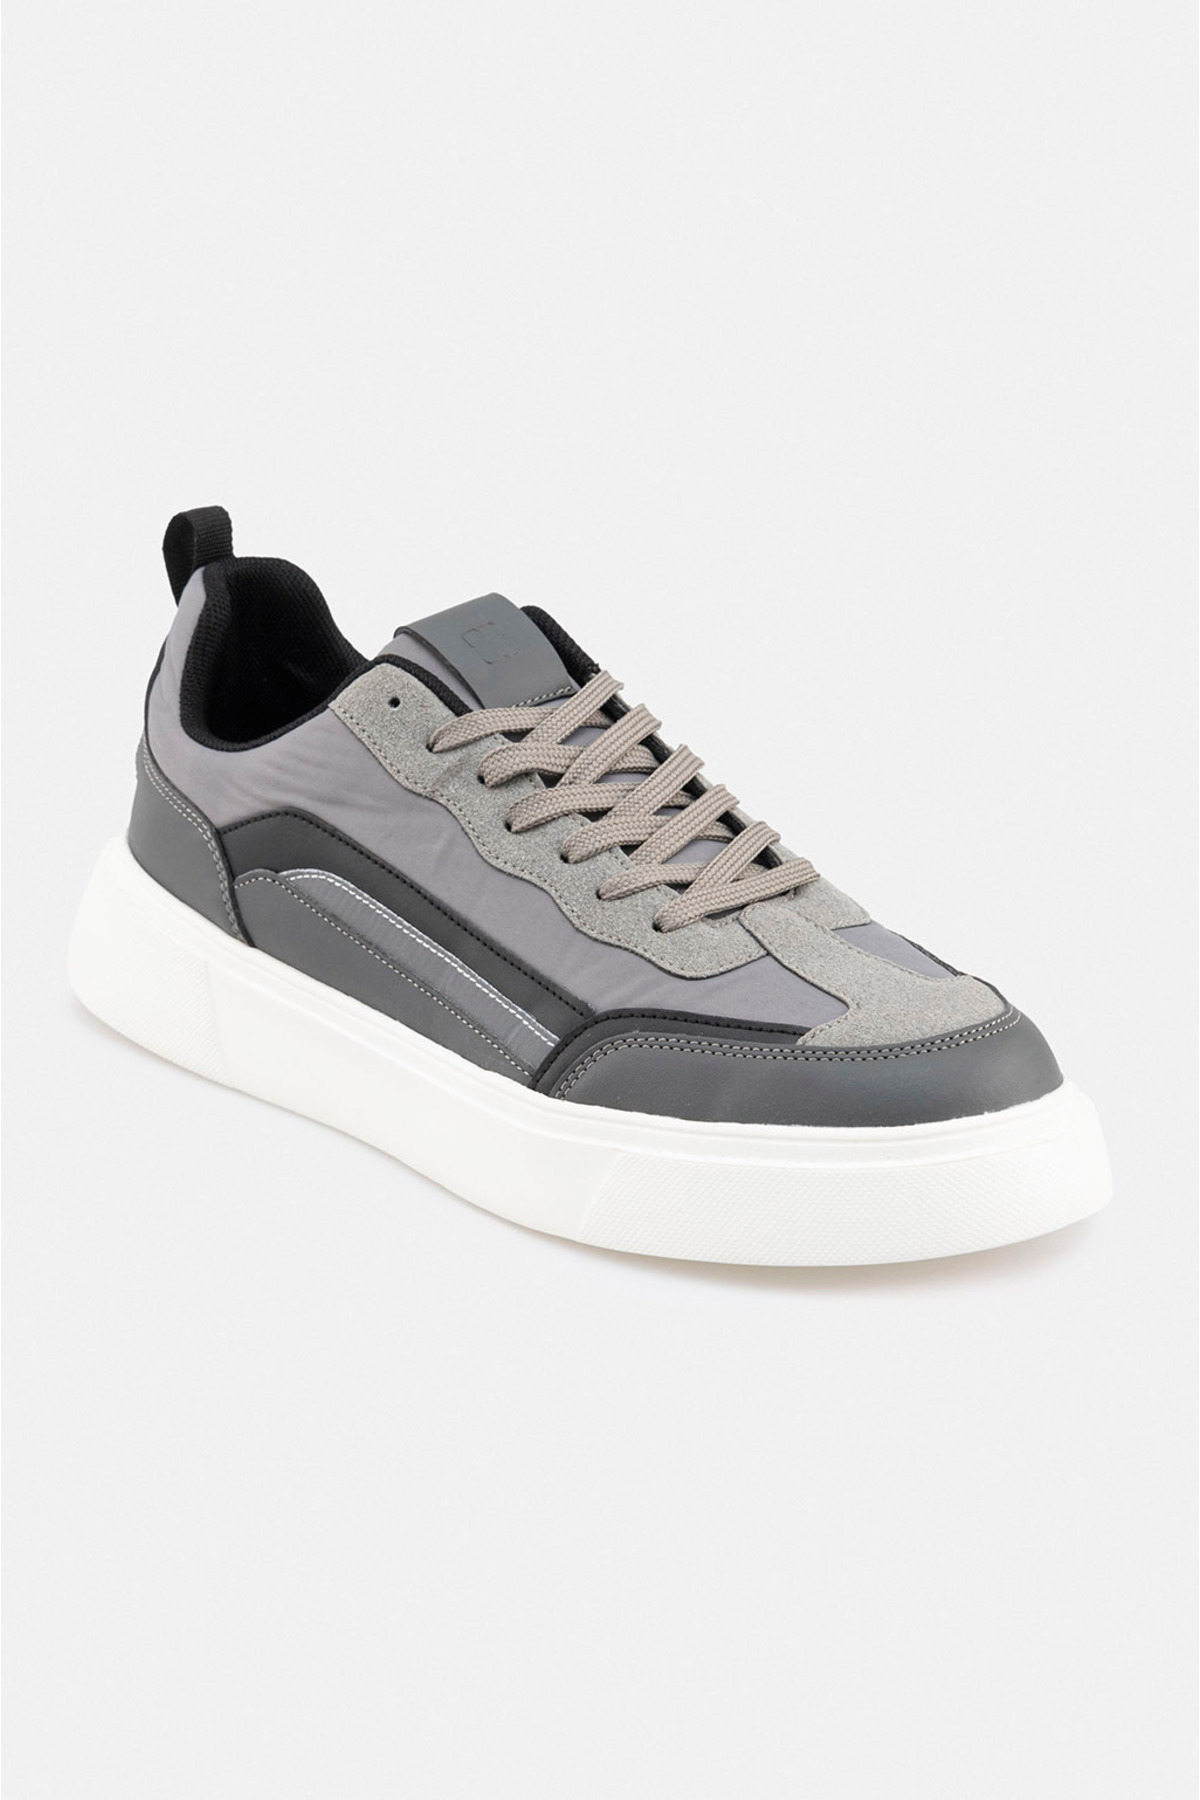 Avva Men's Gray Reflective Flexible Sole Sneaker Shoes